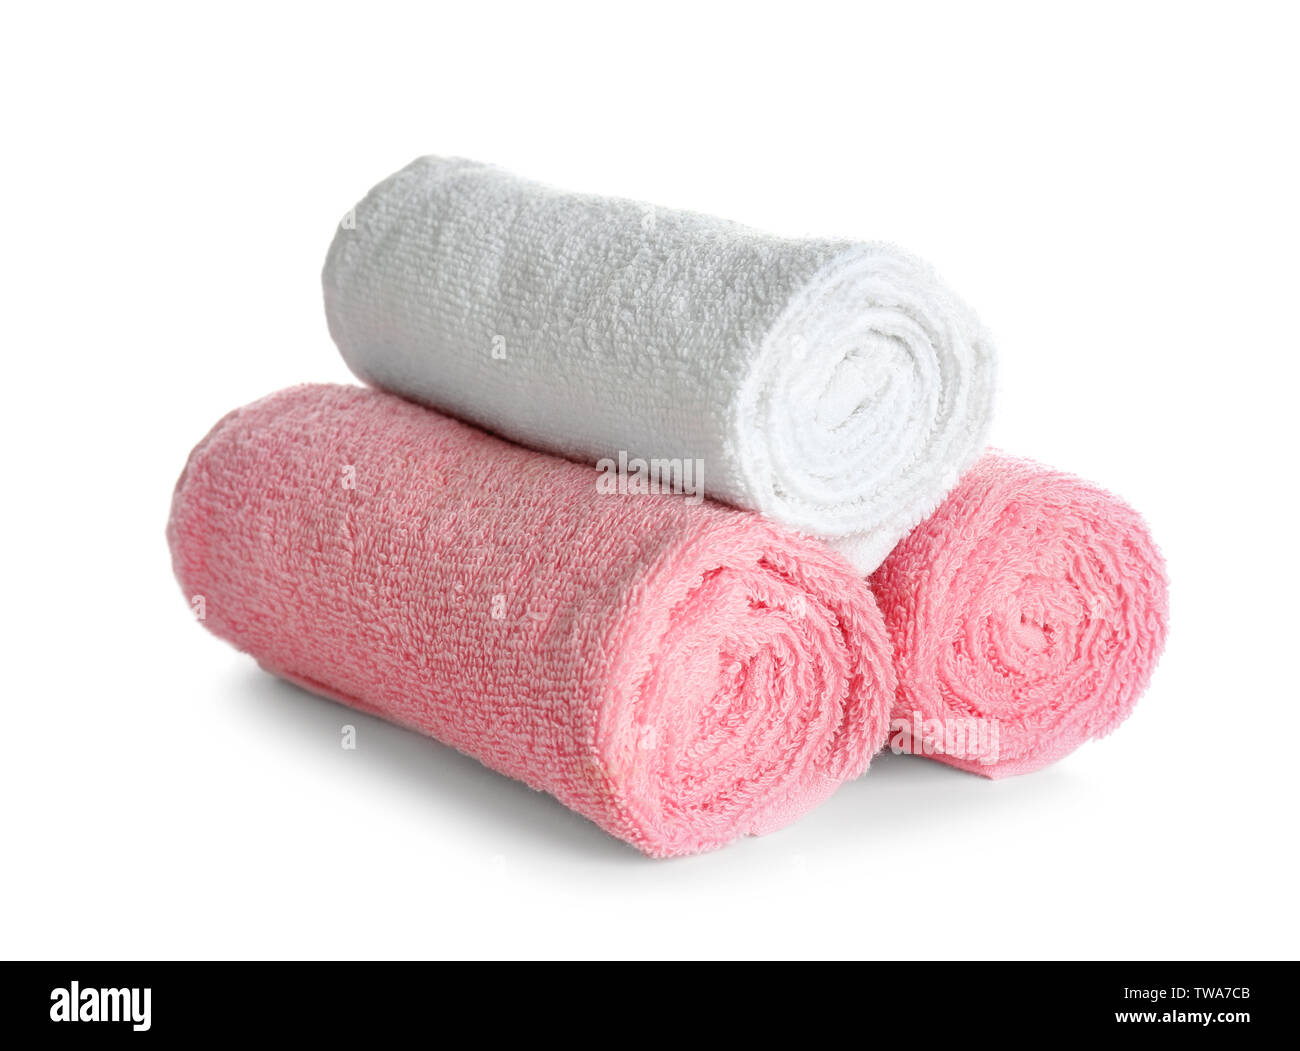 Laminati asciugamani puliti su sfondo bianco. Servizio lavanderia Servizio giorno Foto Stock